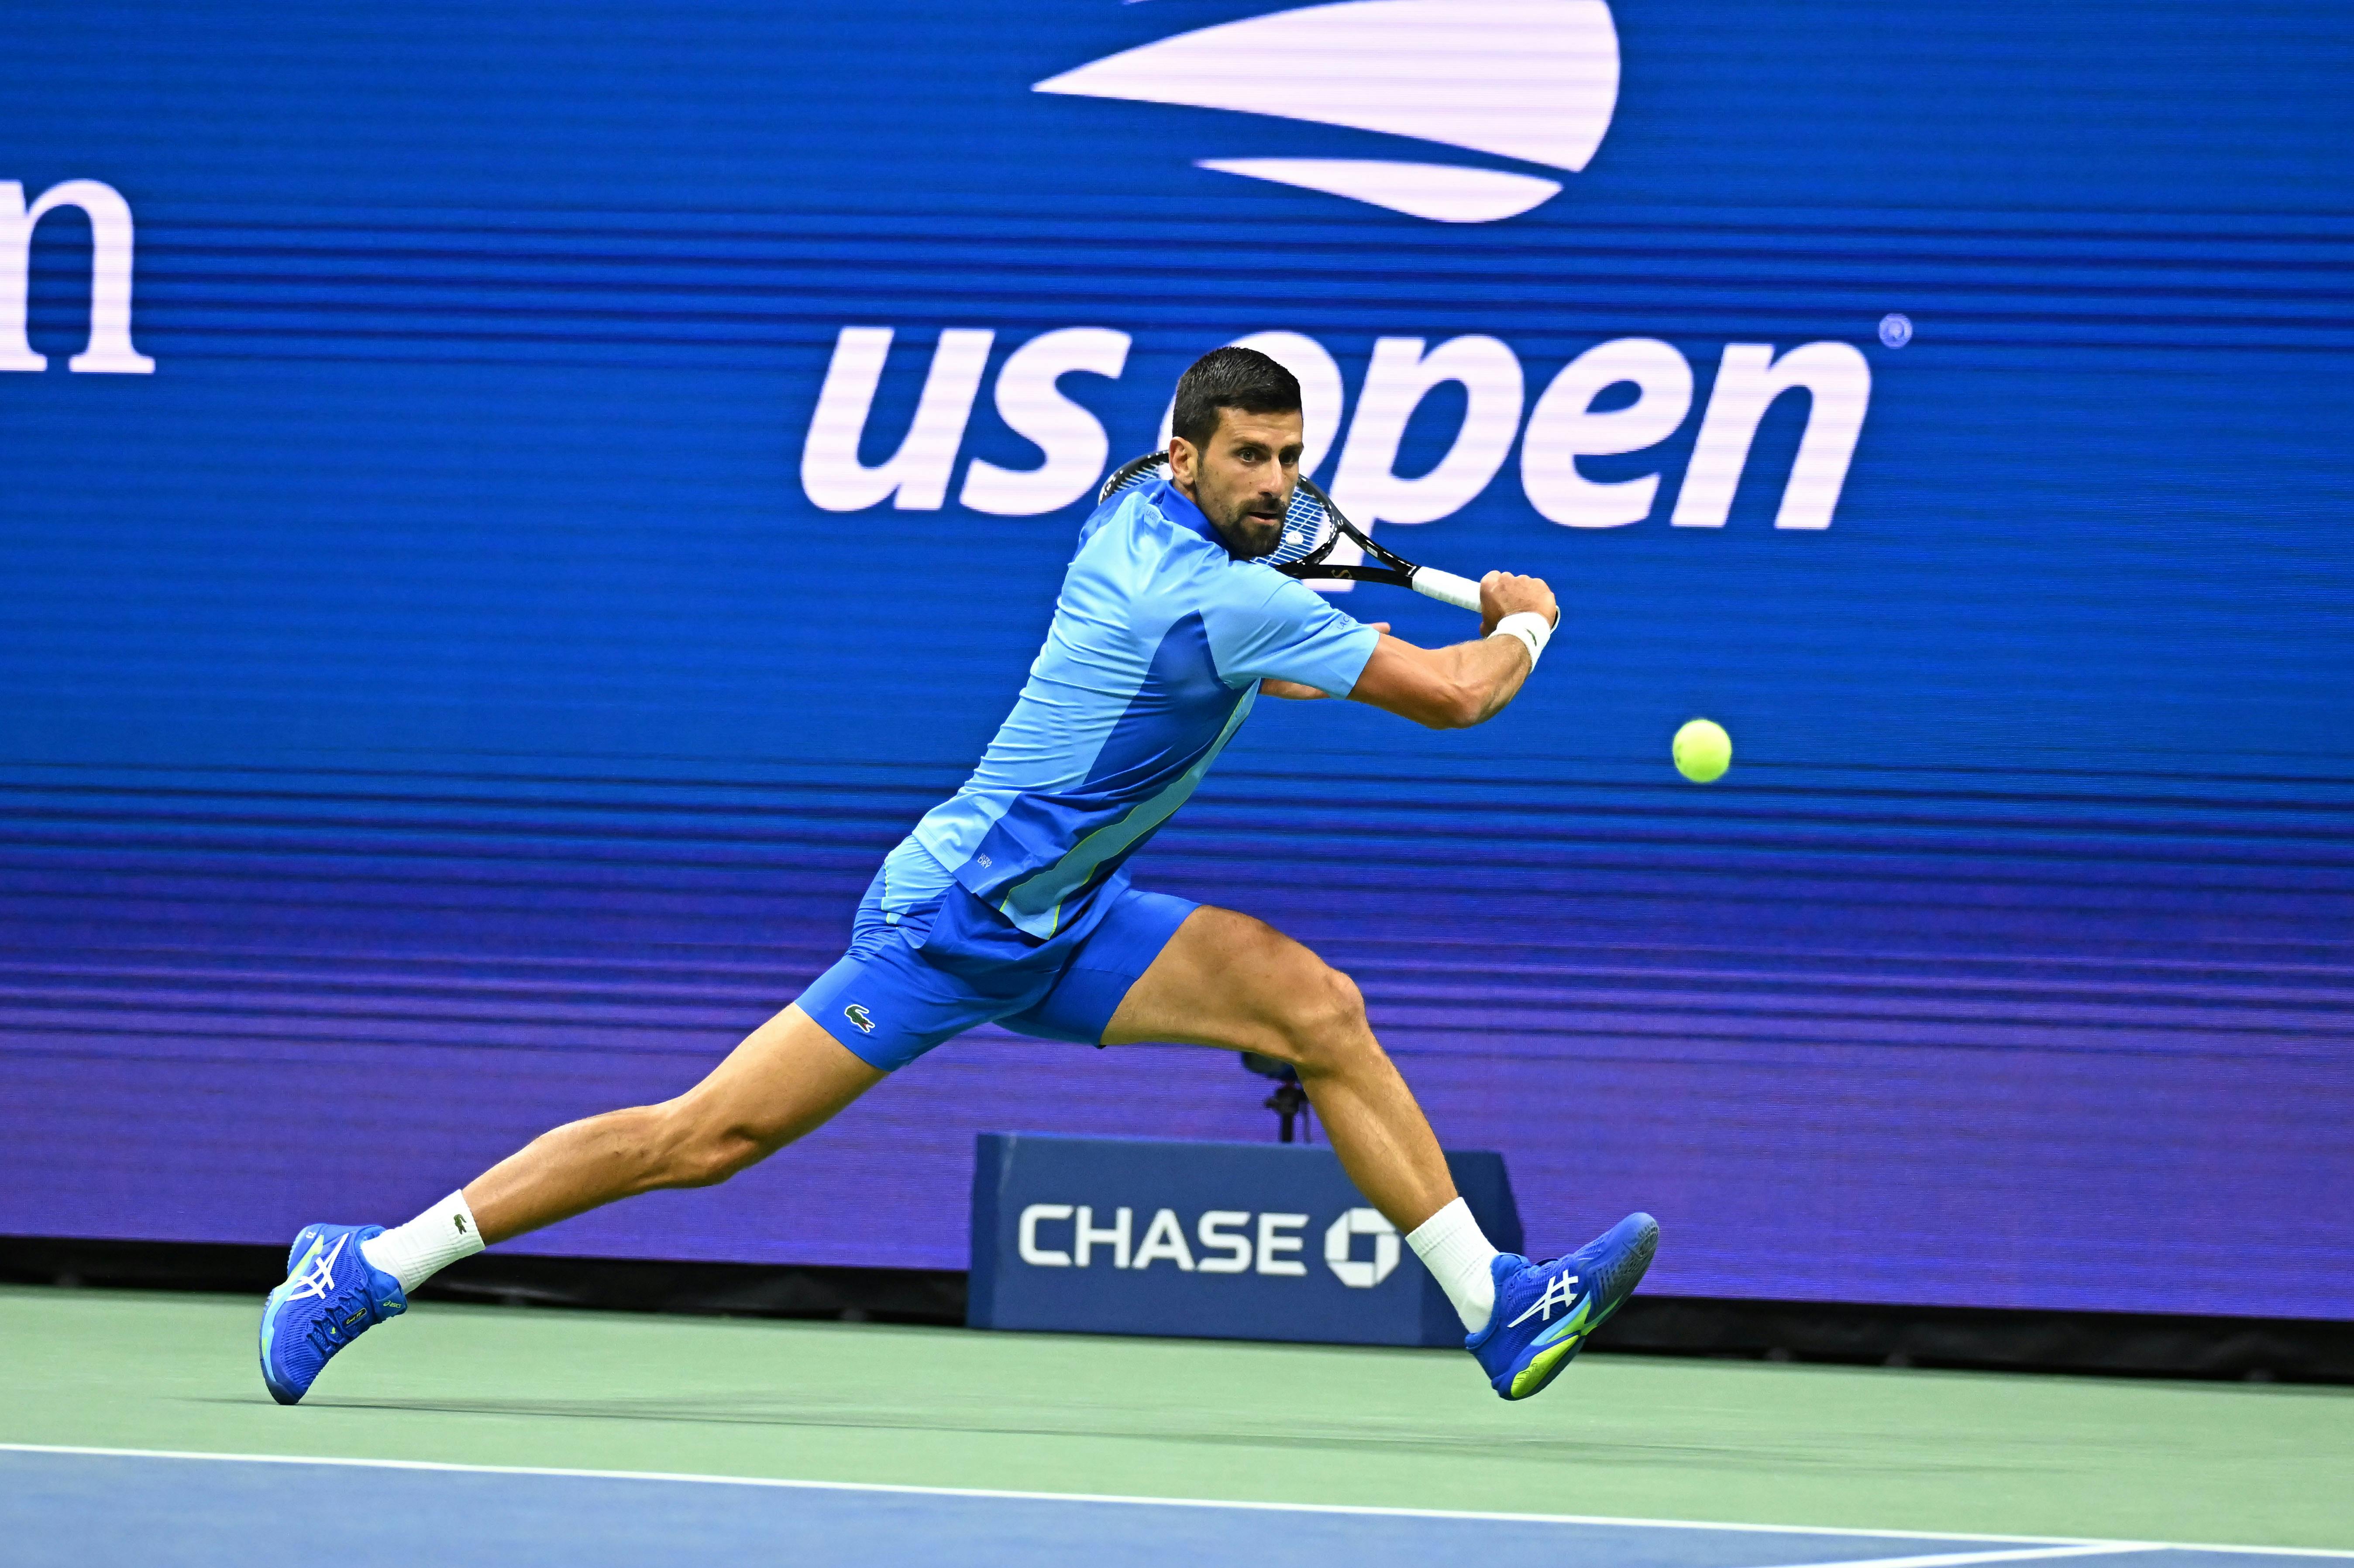 Dubai Tennis Championships: World No. 1 Novak Djokovic survives